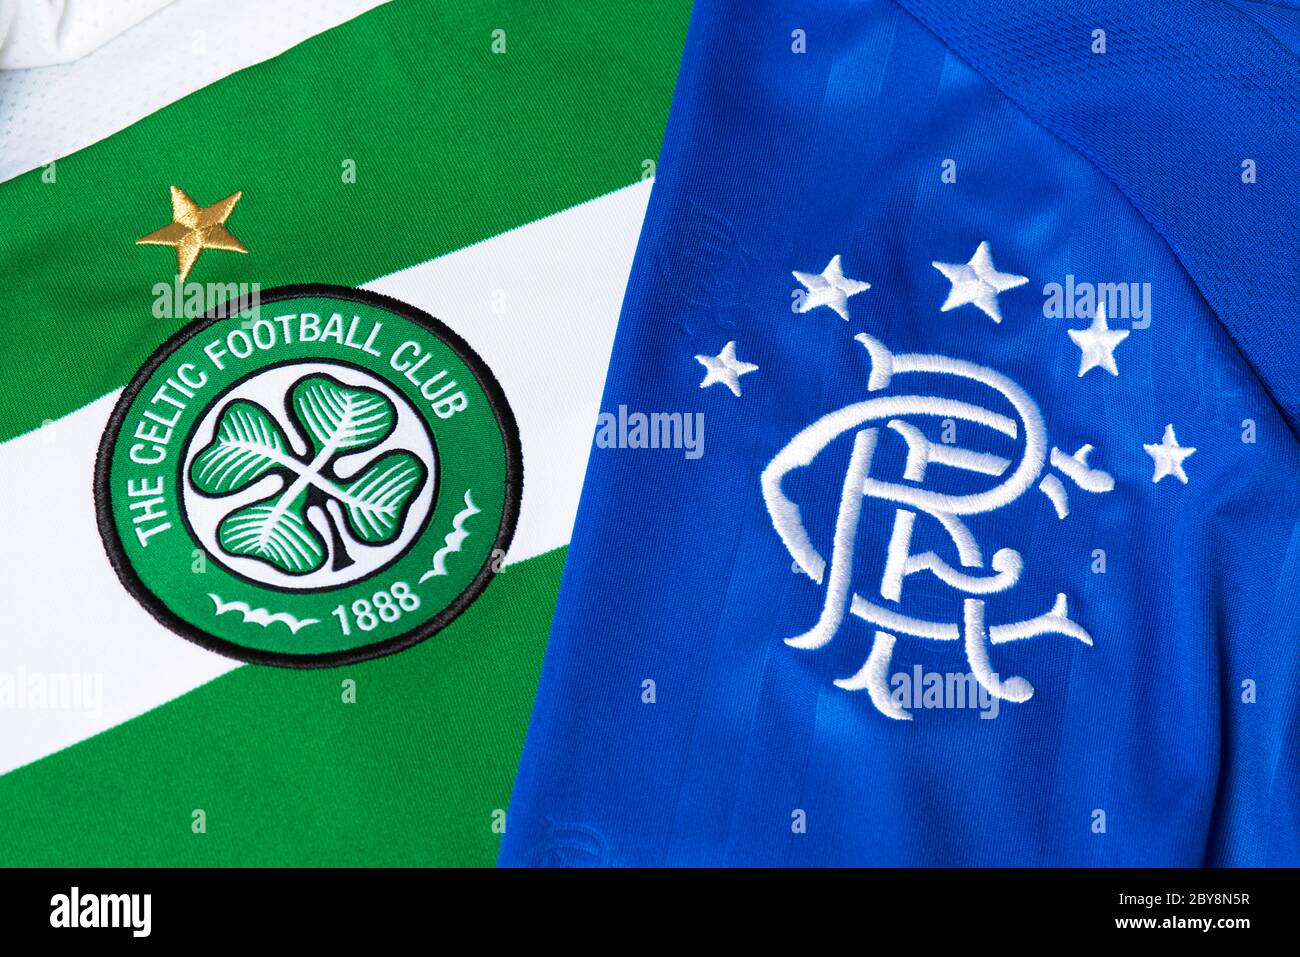 Primer plano de Glasgow Rangers y el escudo del club celta de Glasgow. Foto de stock